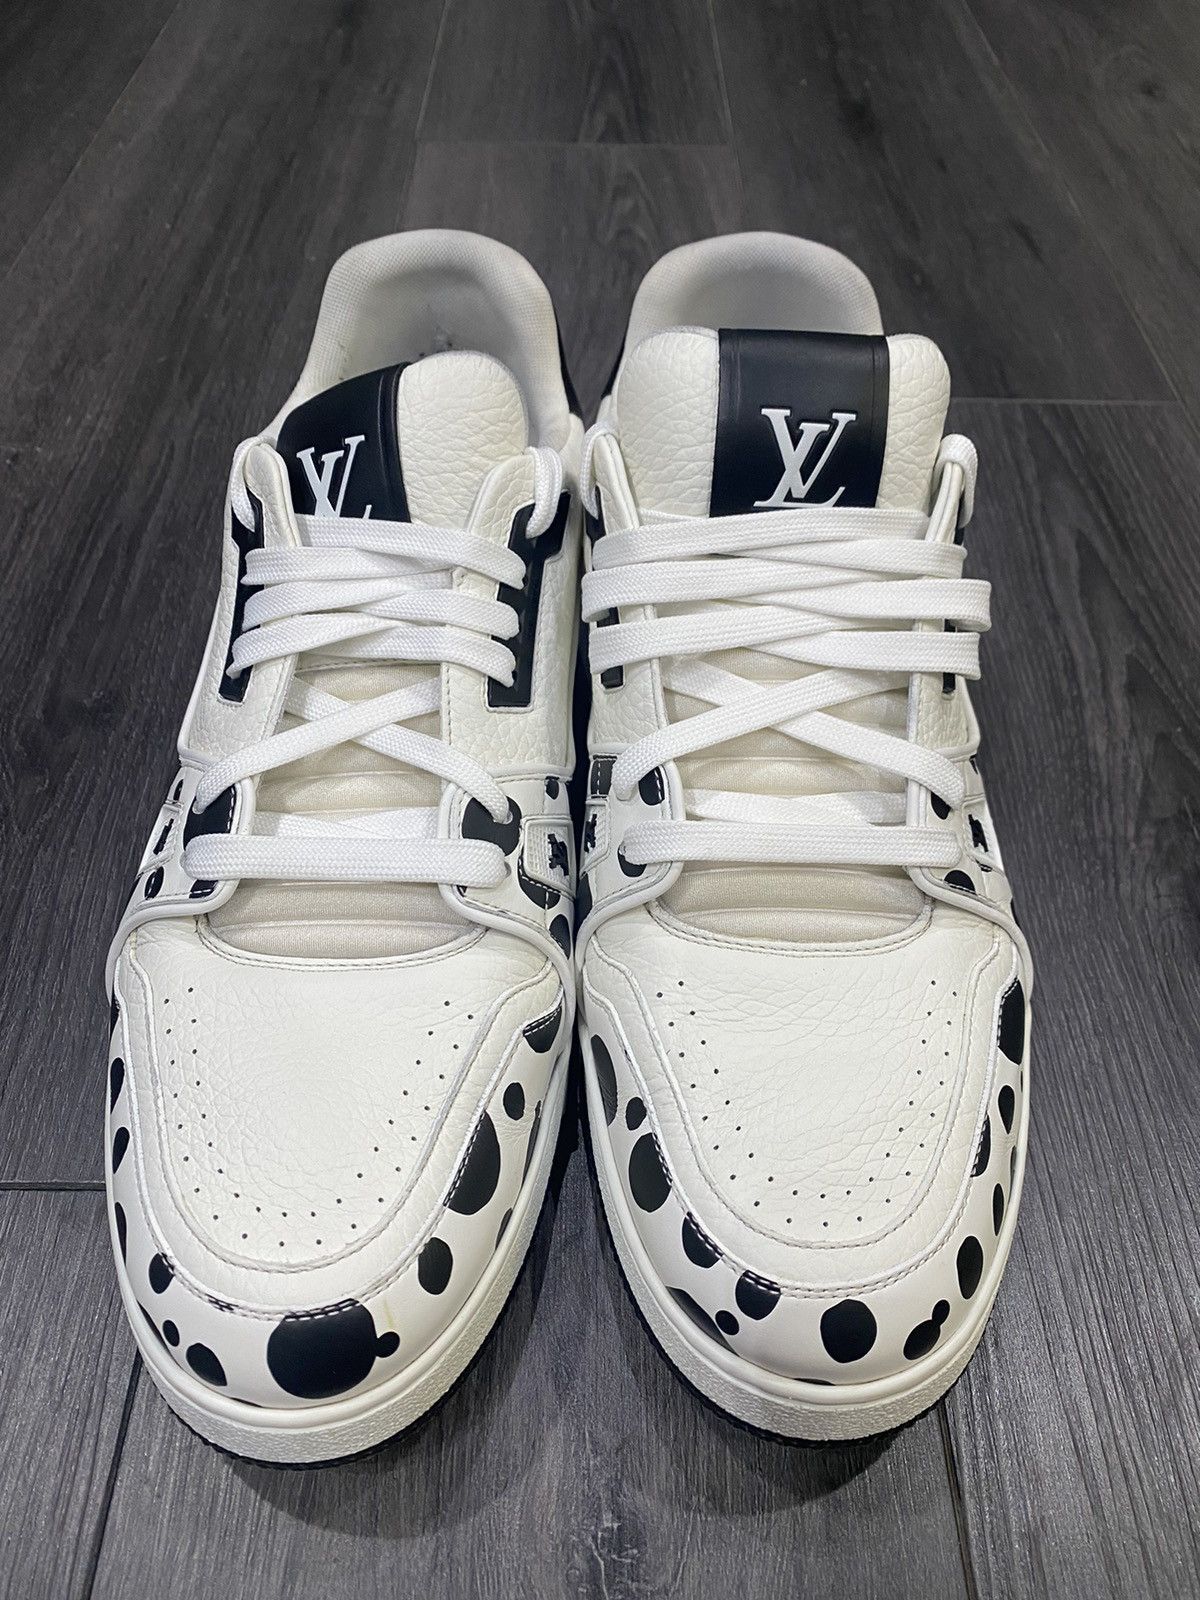 Louis Vuitton Virgil Abloh OG Trainer Black/Red/White Sneaker LVSz